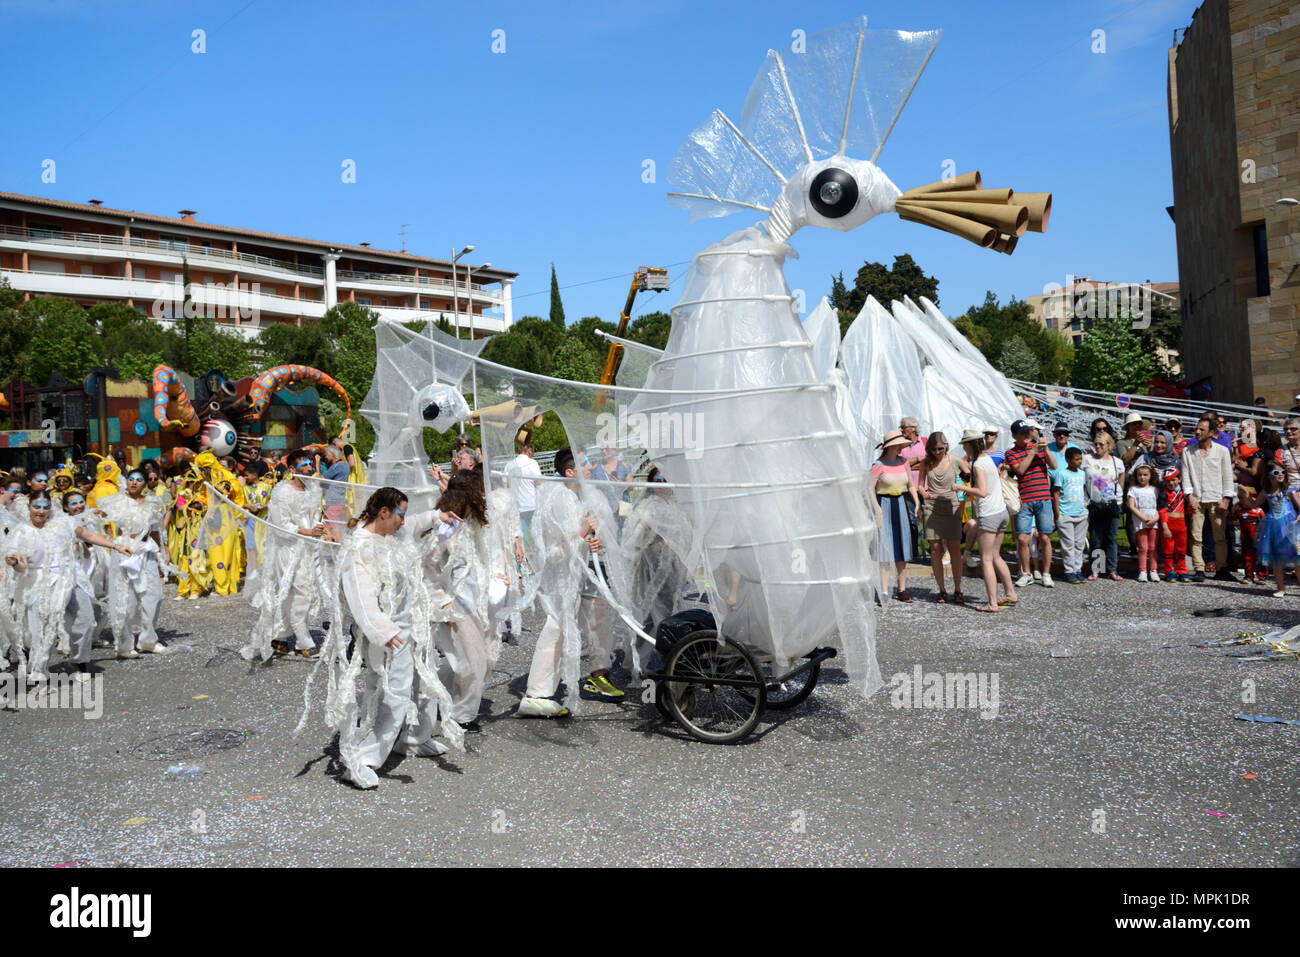 Carnival flottent dans la forme d'un oiseau mythique créature construit sur les roues du landau ancien carnaval du printemps à Aix-en-Provence Provence France Banque D'Images